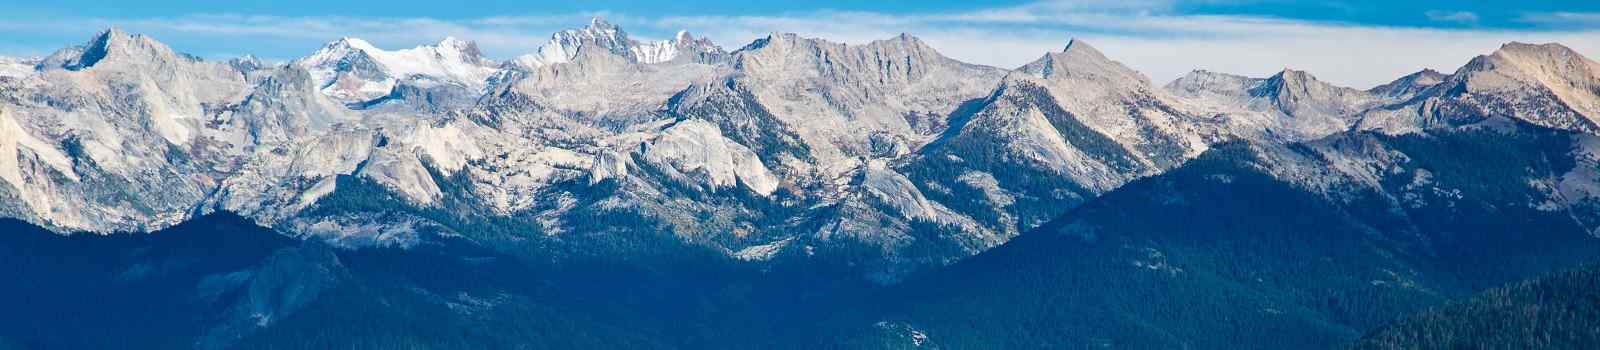 BESTE-KALIFORNIEN 1 Kalifornien Blick vom MoroRock in Sequoia und KingsCanyon 66519235